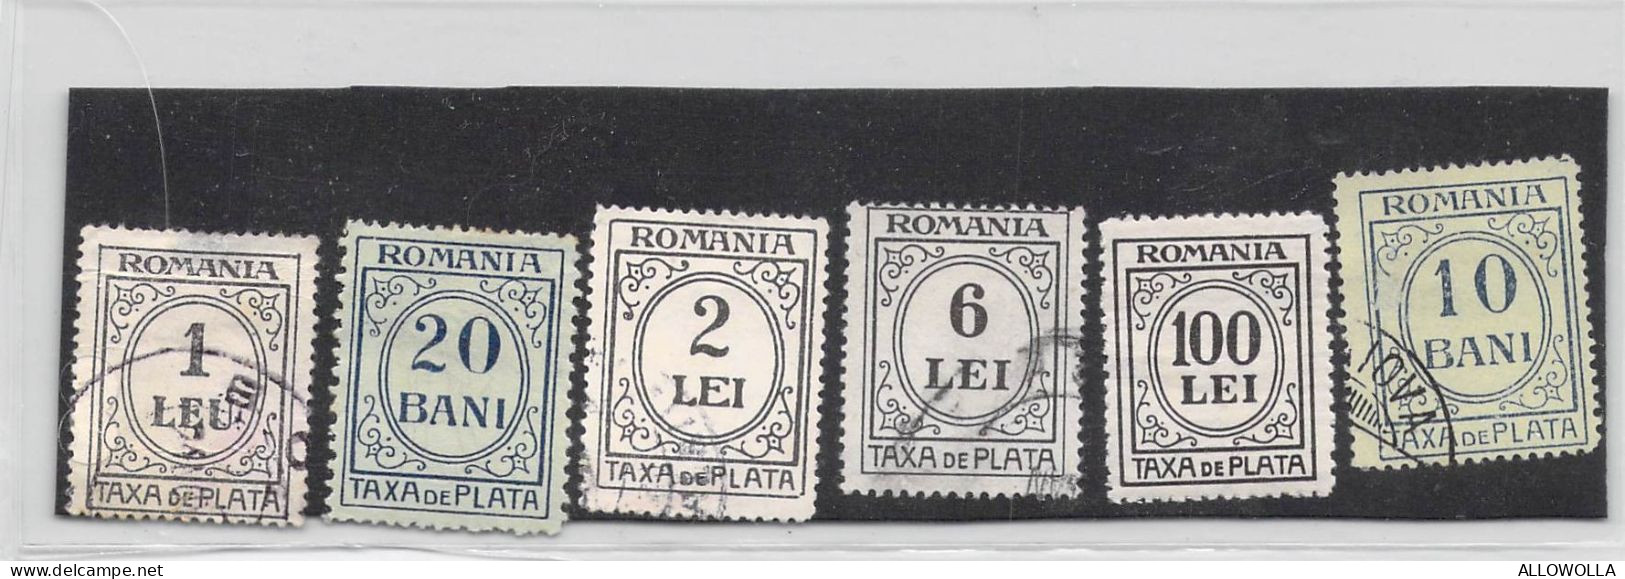 22186 " ROMANIA-TAXA DE PLATA-6 VALORI "  1 LEU E 20 BANI LINGUELLATI - Portomarken